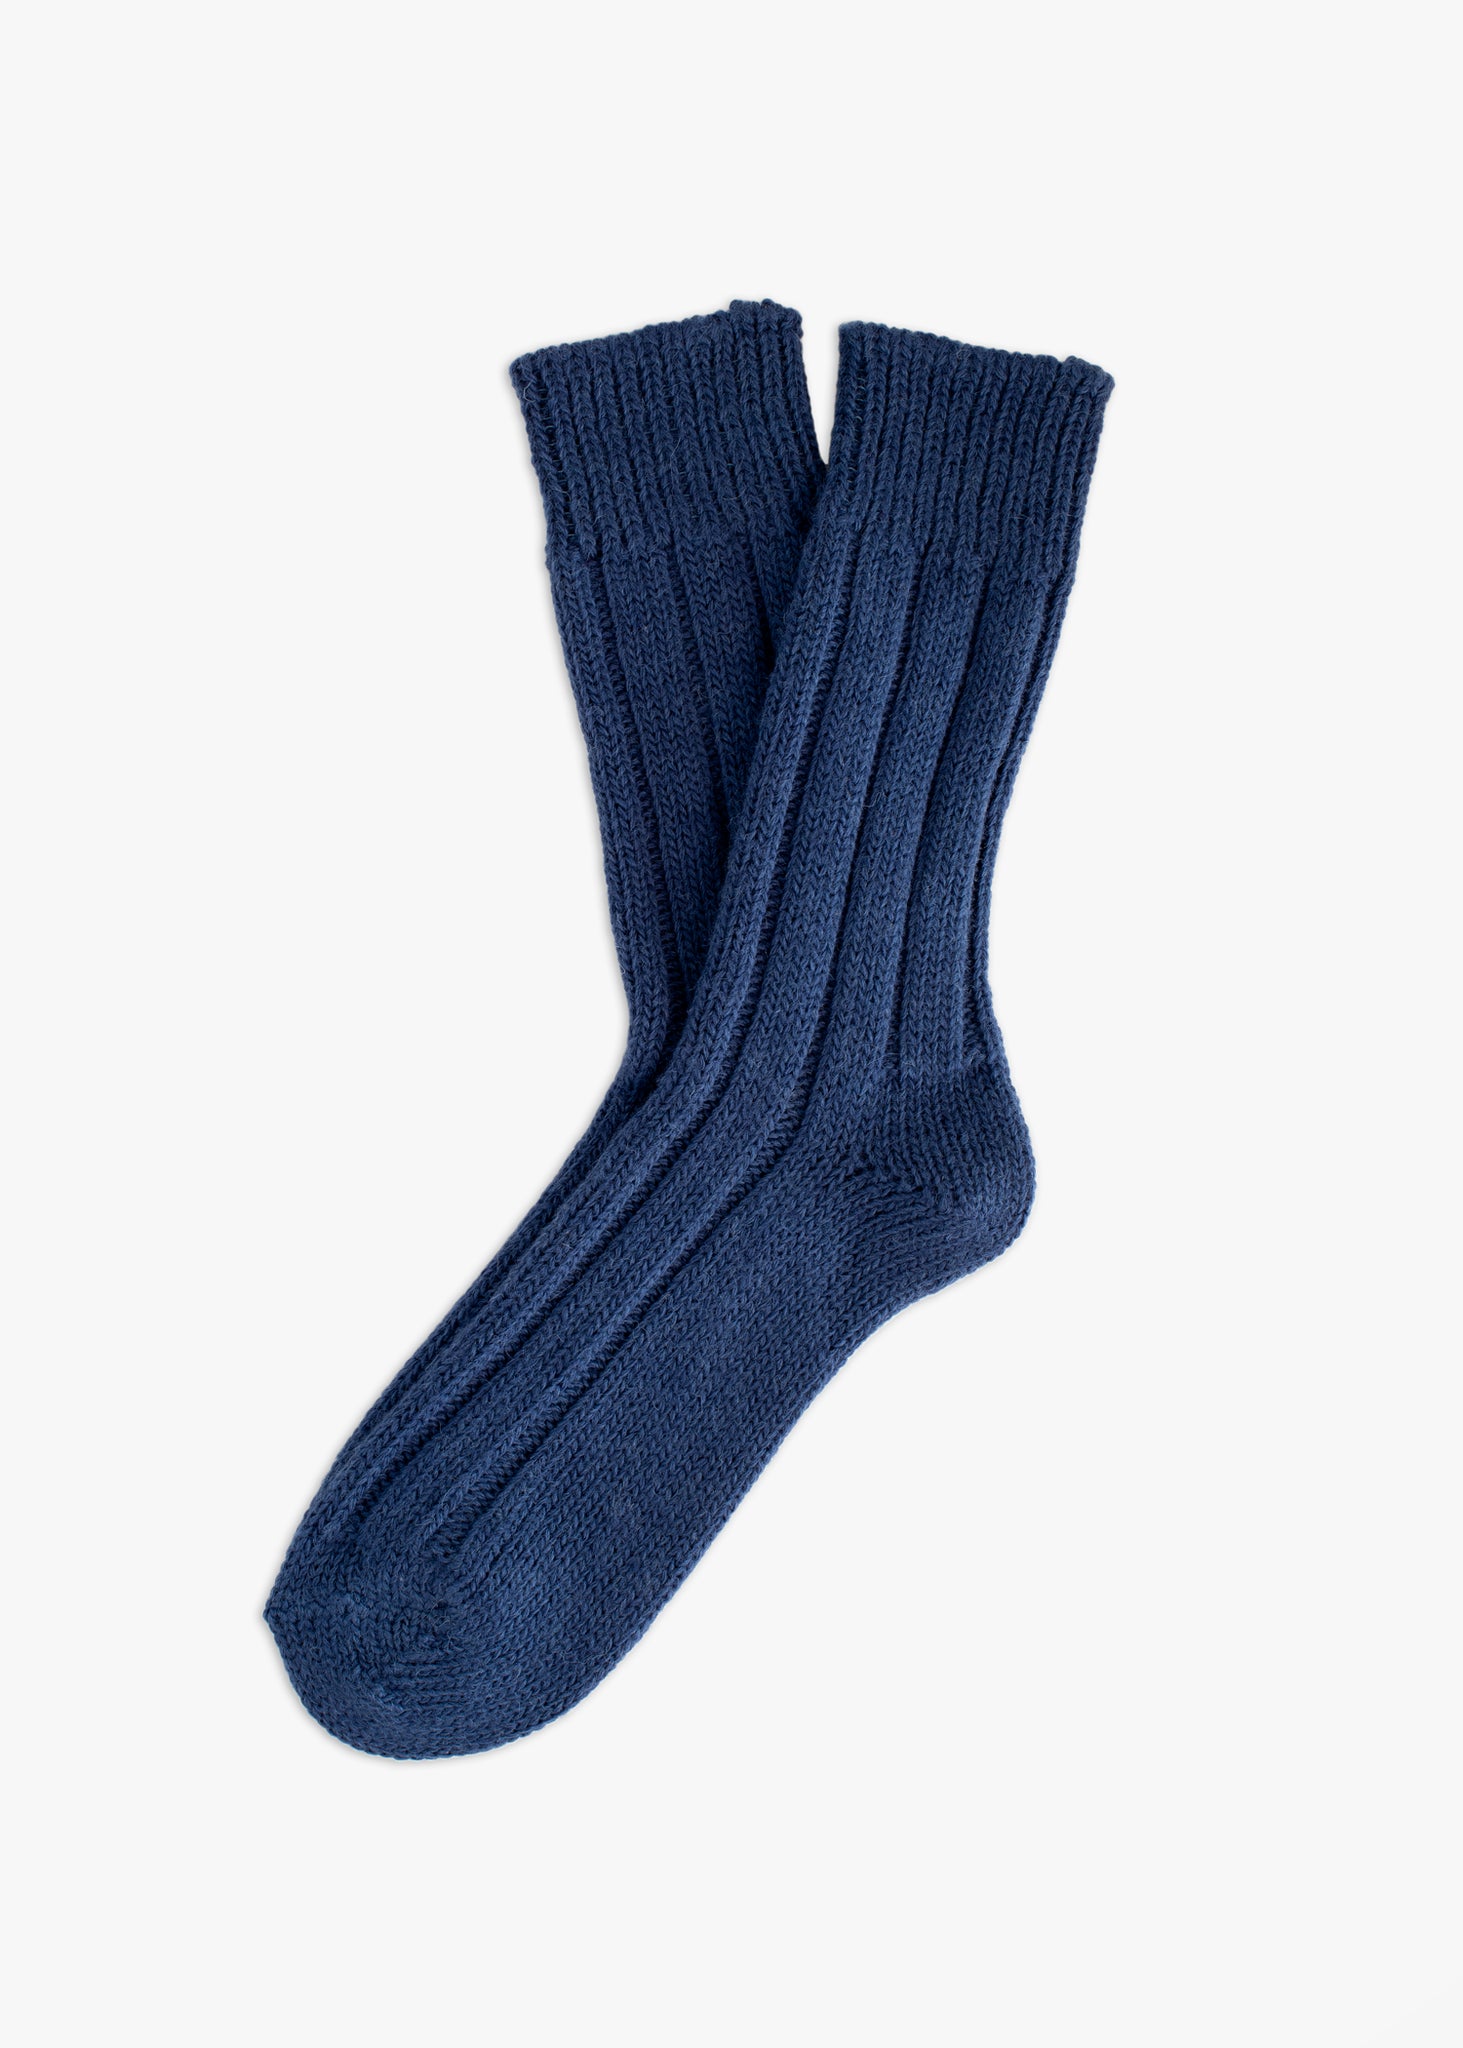 Thunders Love Wool Shetland Navy Socks